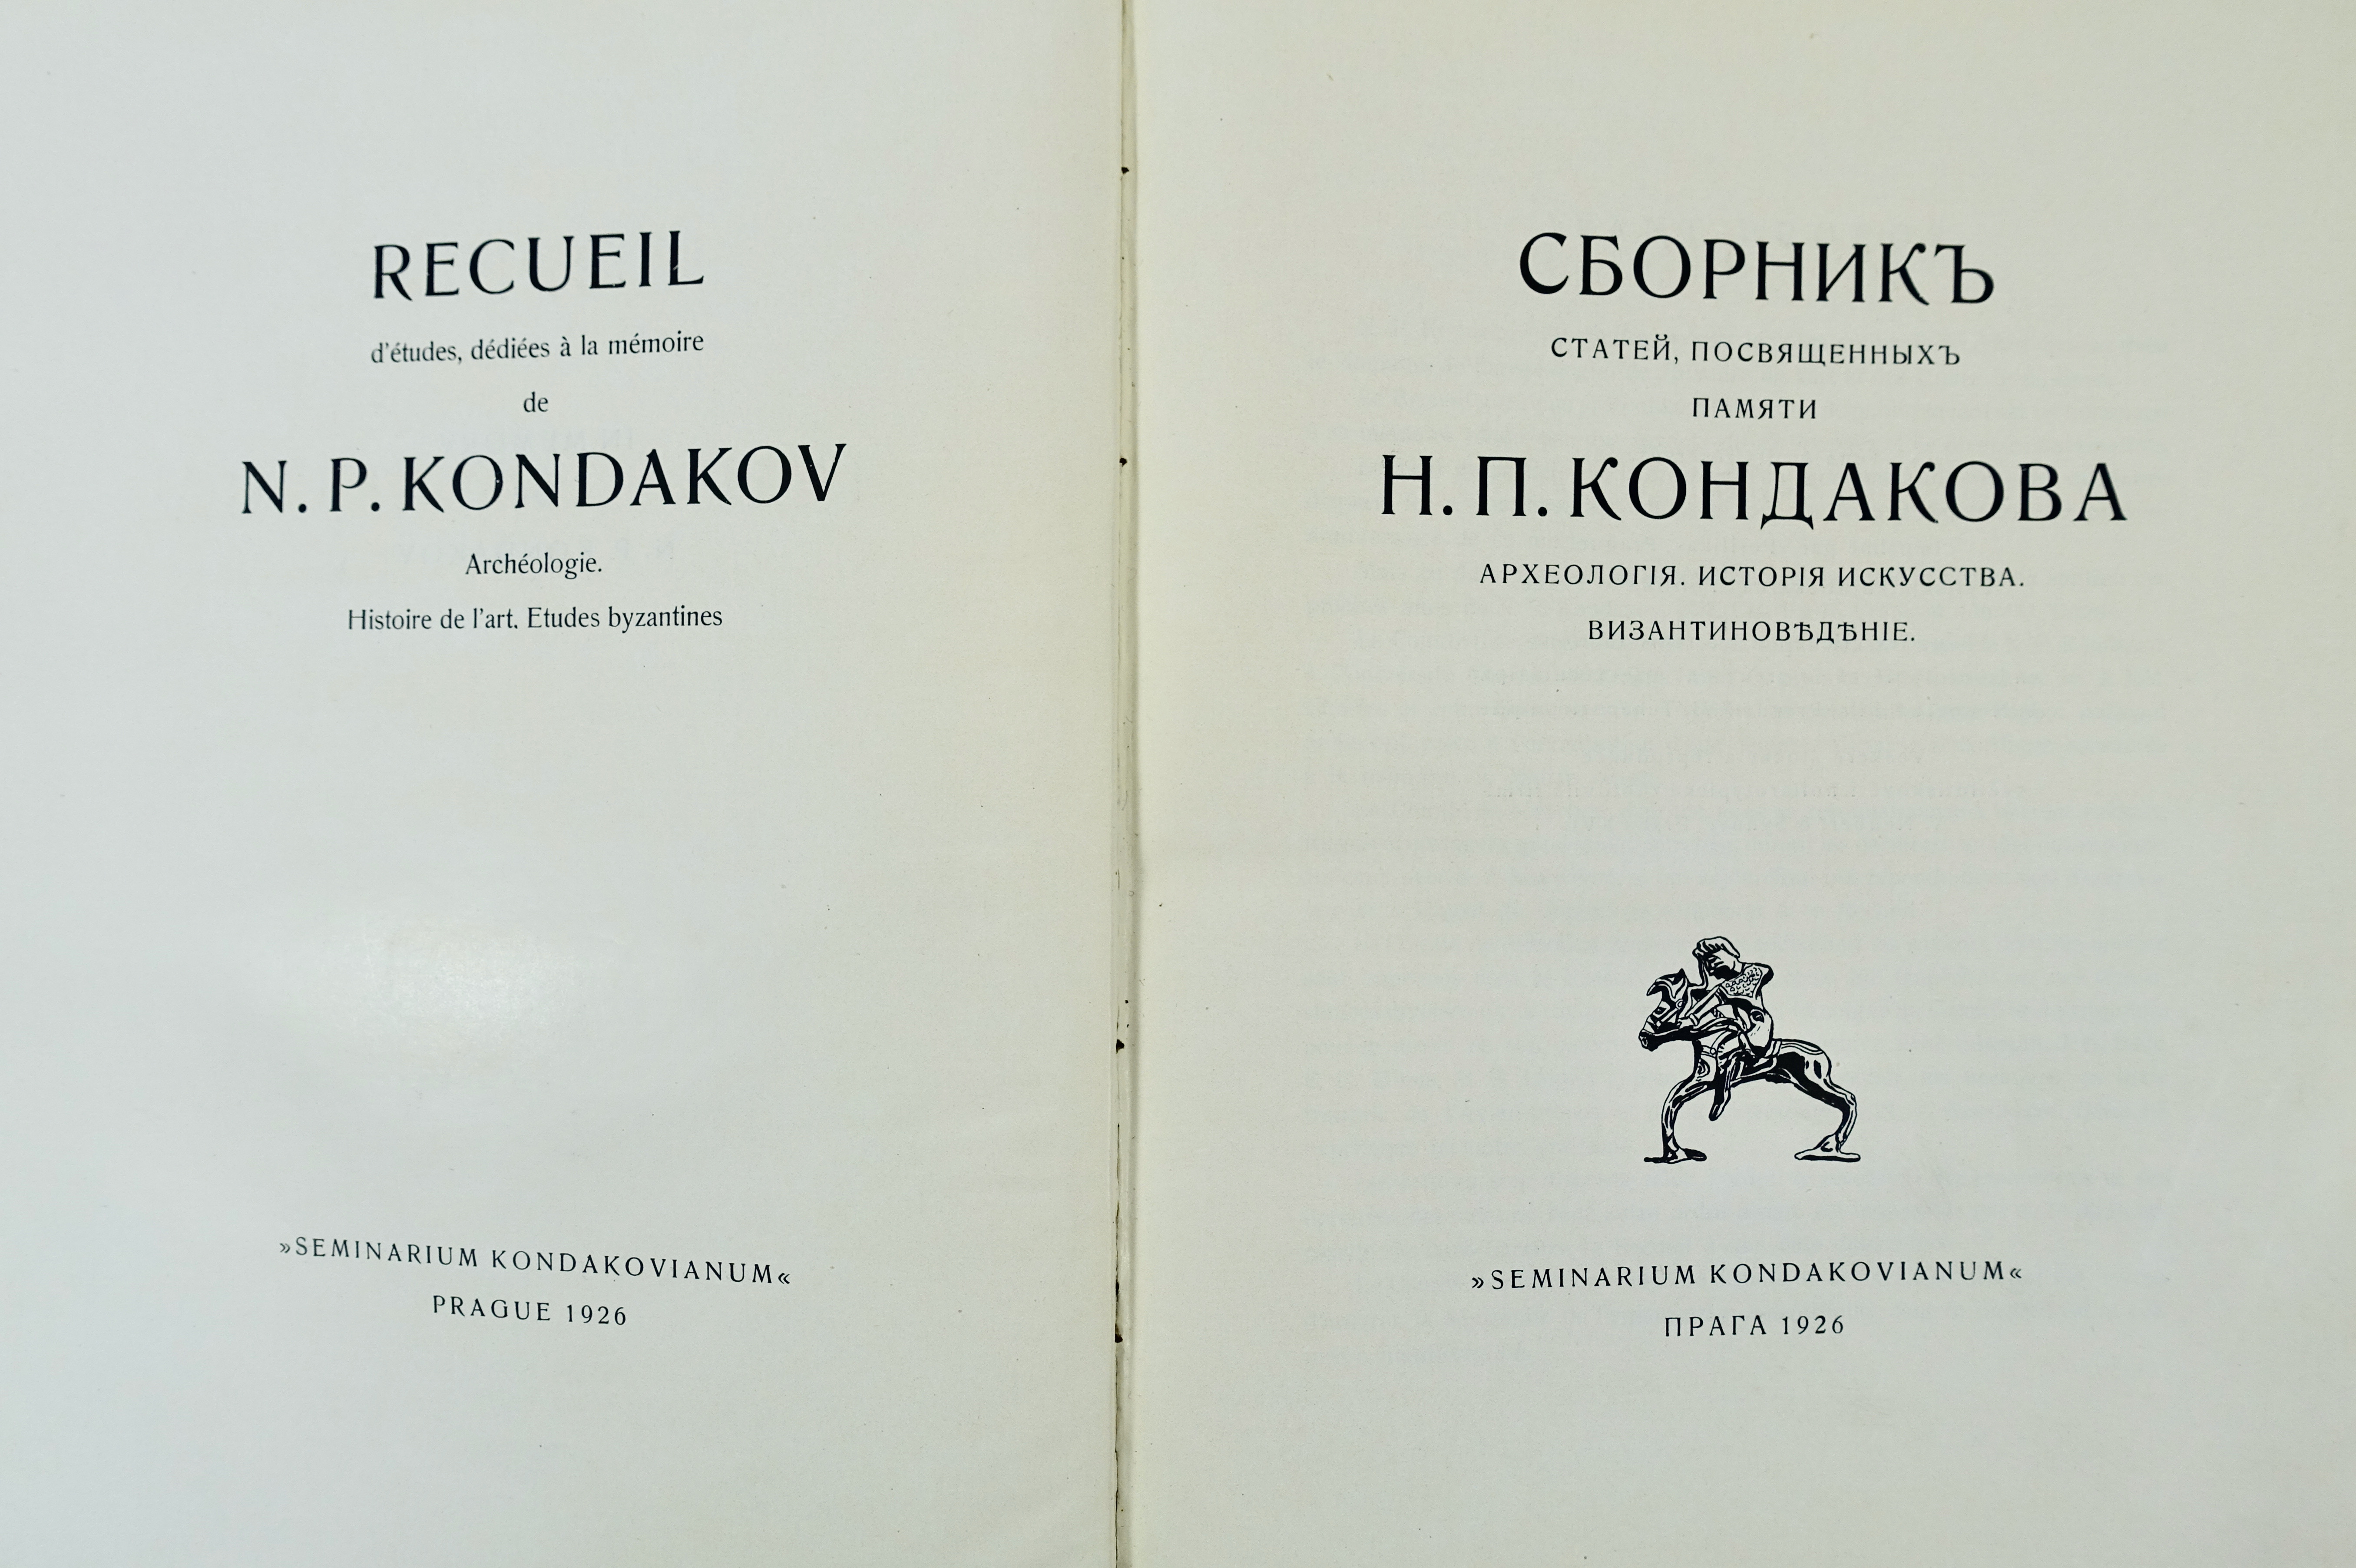 KONDAKOV -- RECUEIL d'études, dédiées à la mémoire de N.P. Kondakov. Archéologie, Histoire